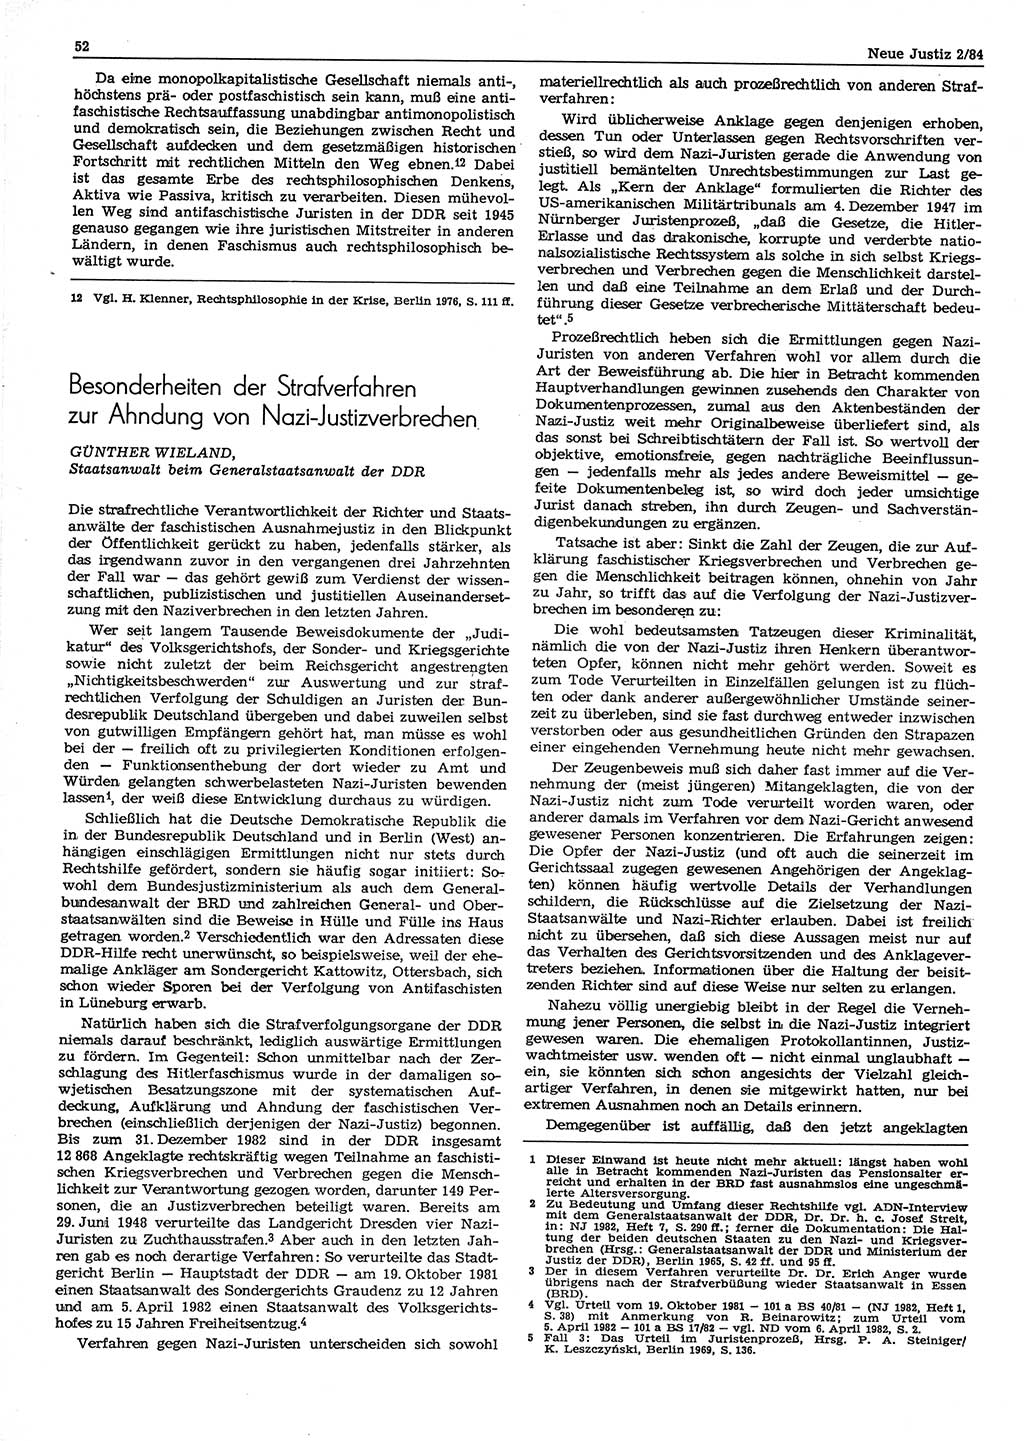 Neue Justiz (NJ), Zeitschrift für sozialistisches Recht und Gesetzlichkeit [Deutsche Demokratische Republik (DDR)], 38. Jahrgang 1984, Seite 52 (NJ DDR 1984, S. 52)